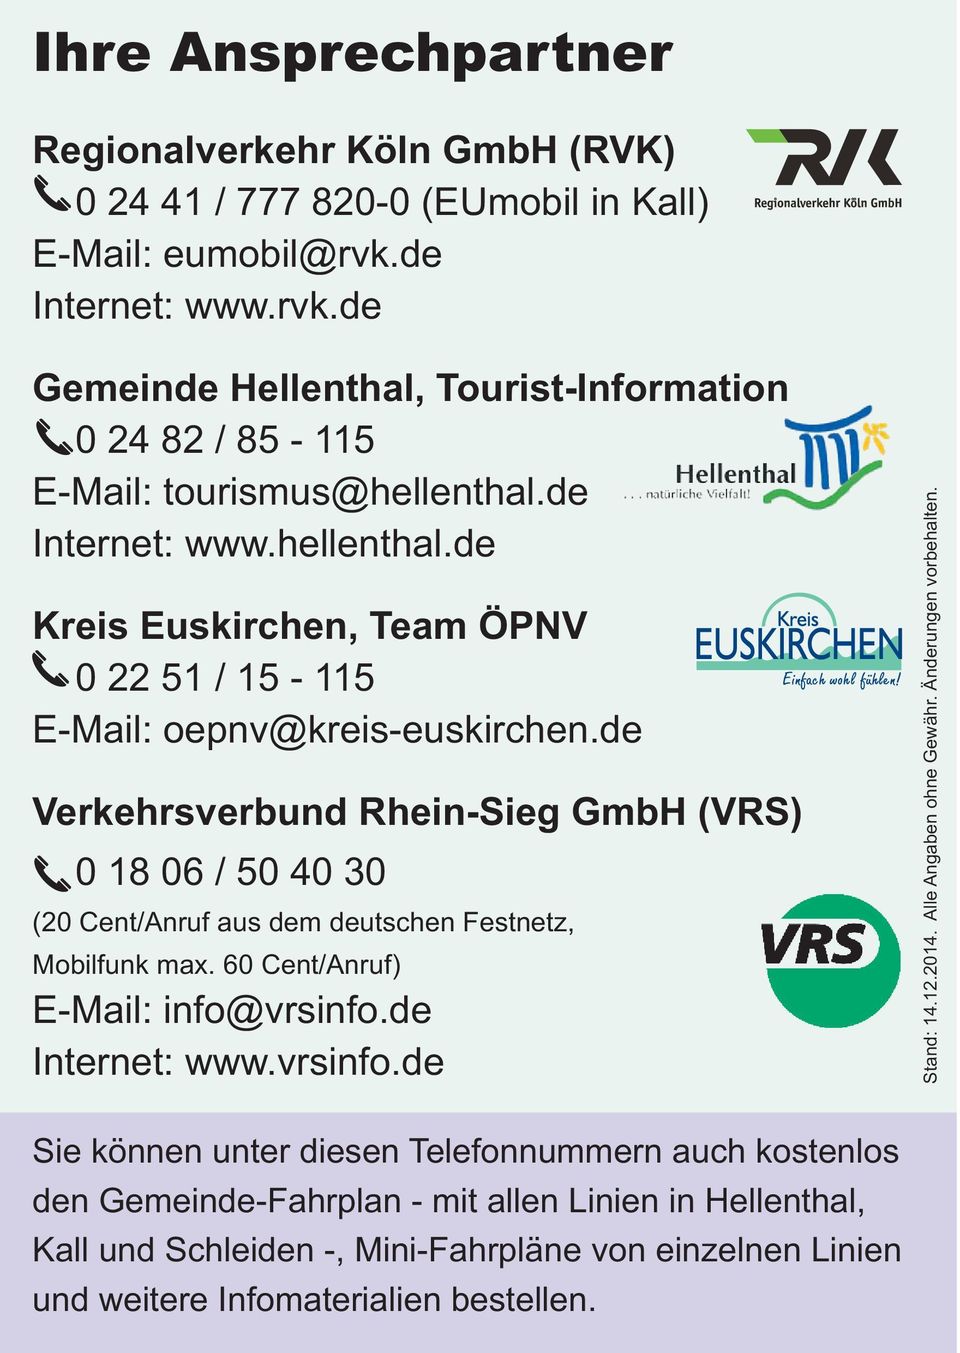 de Verkehrsverbund Rhein-Sieg GmbH (VRS) 0 18 06 / 50 40 30 (20 Cent/Anruf aus dem deutschen Festnetz, Mobilfunk max. 60 Cent/Anruf) E-Mail: info@vrsinfo.de Internet: www.vrsinfo.de Stand: 14.12.